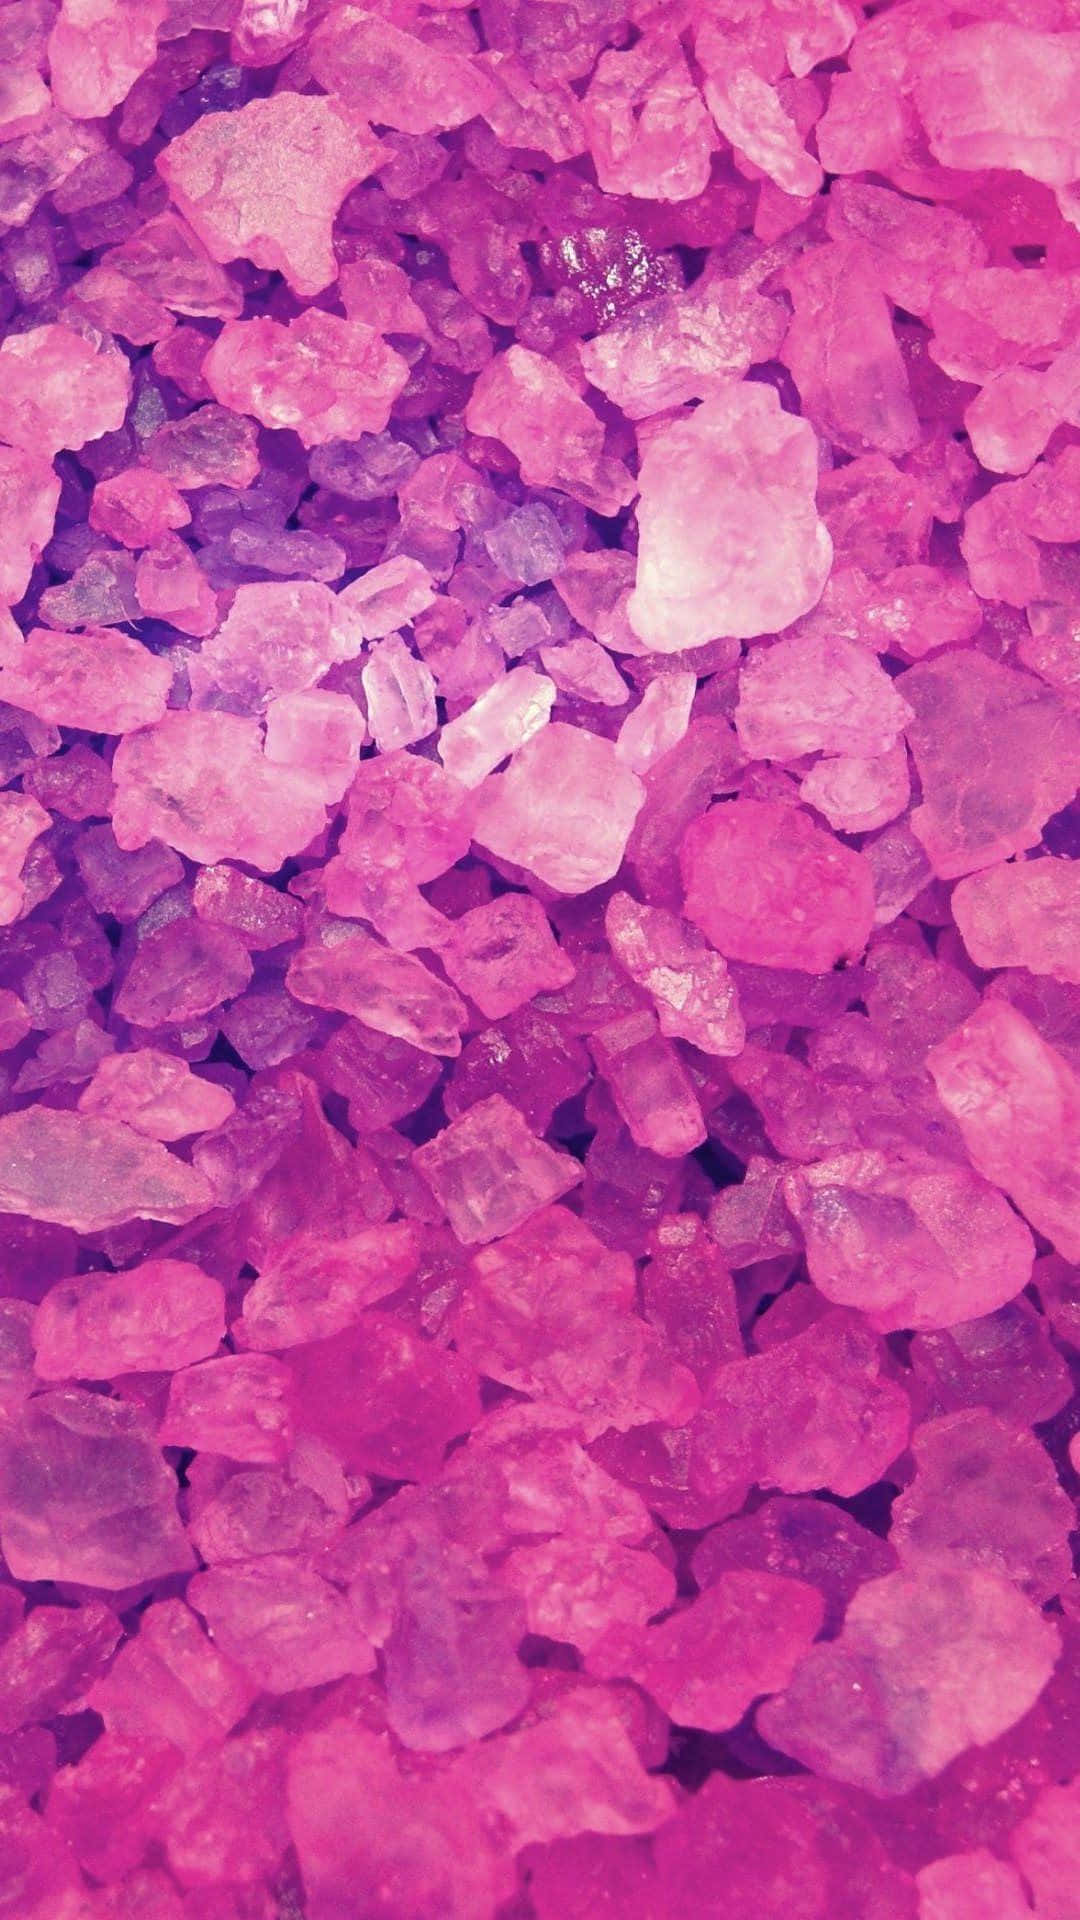 Fotoritratto Di Cristalli Minerali Rosa Dall'estetica Affascinante